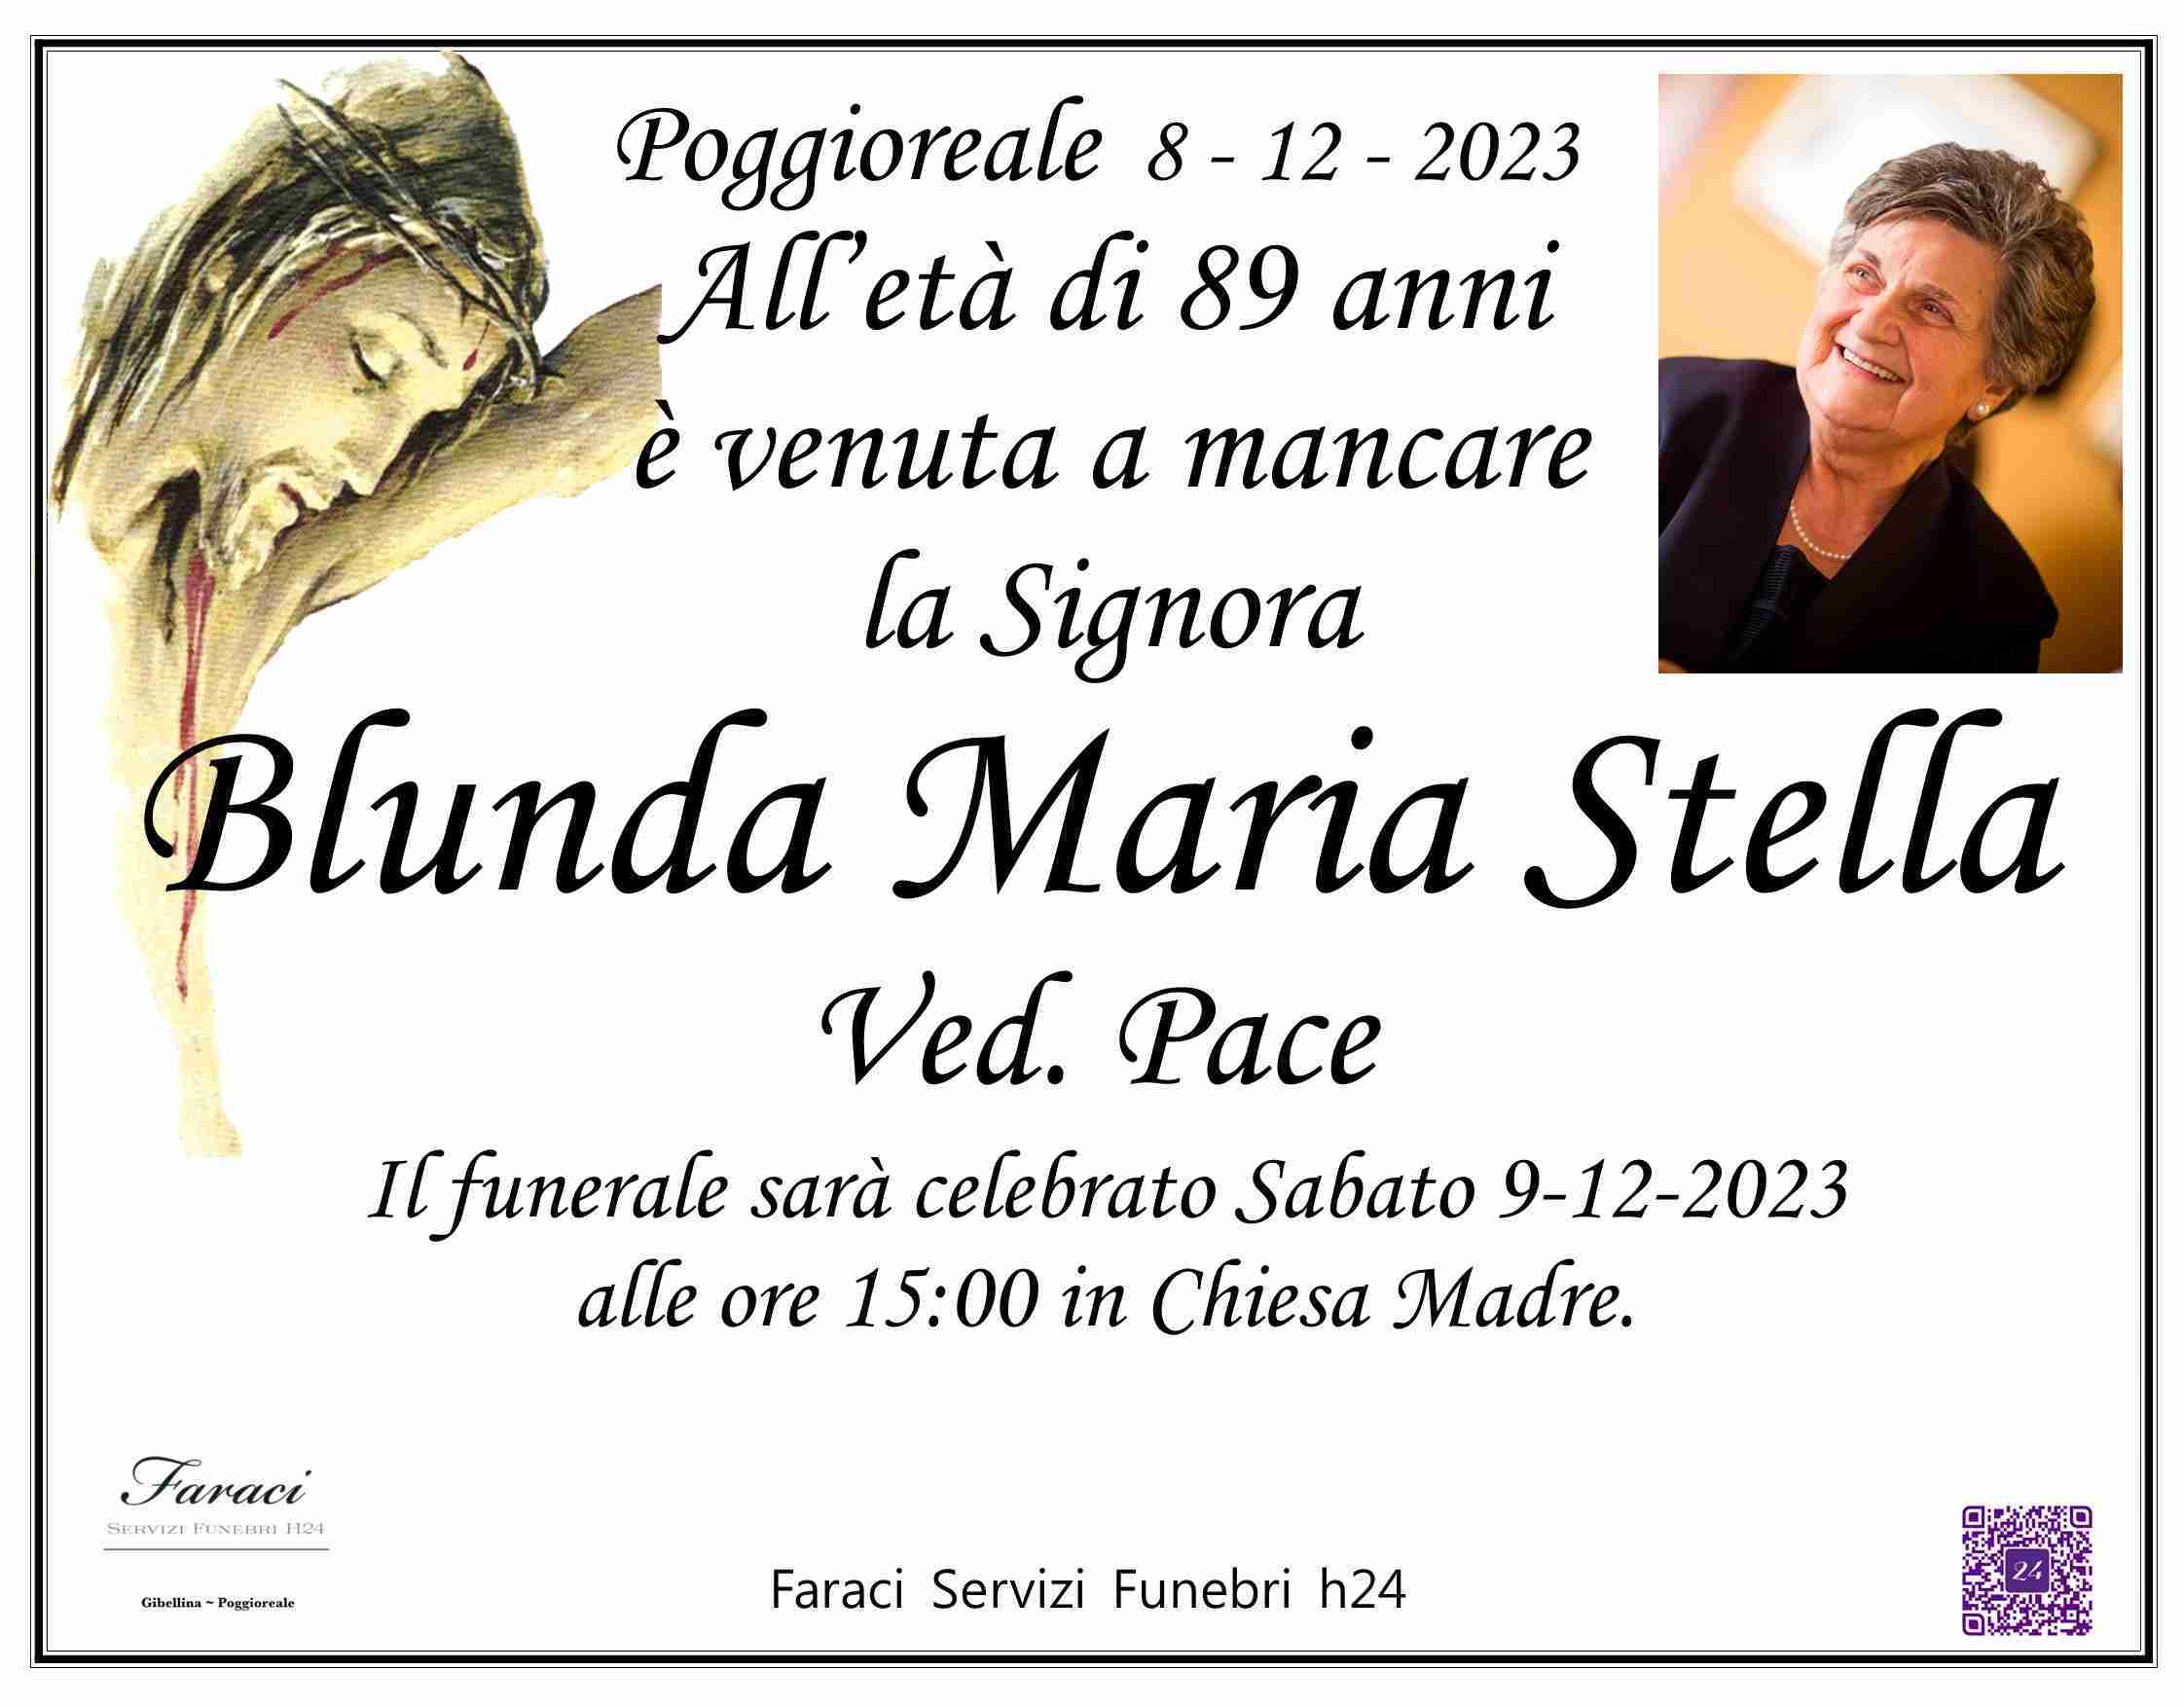 Maria Stella Blunda